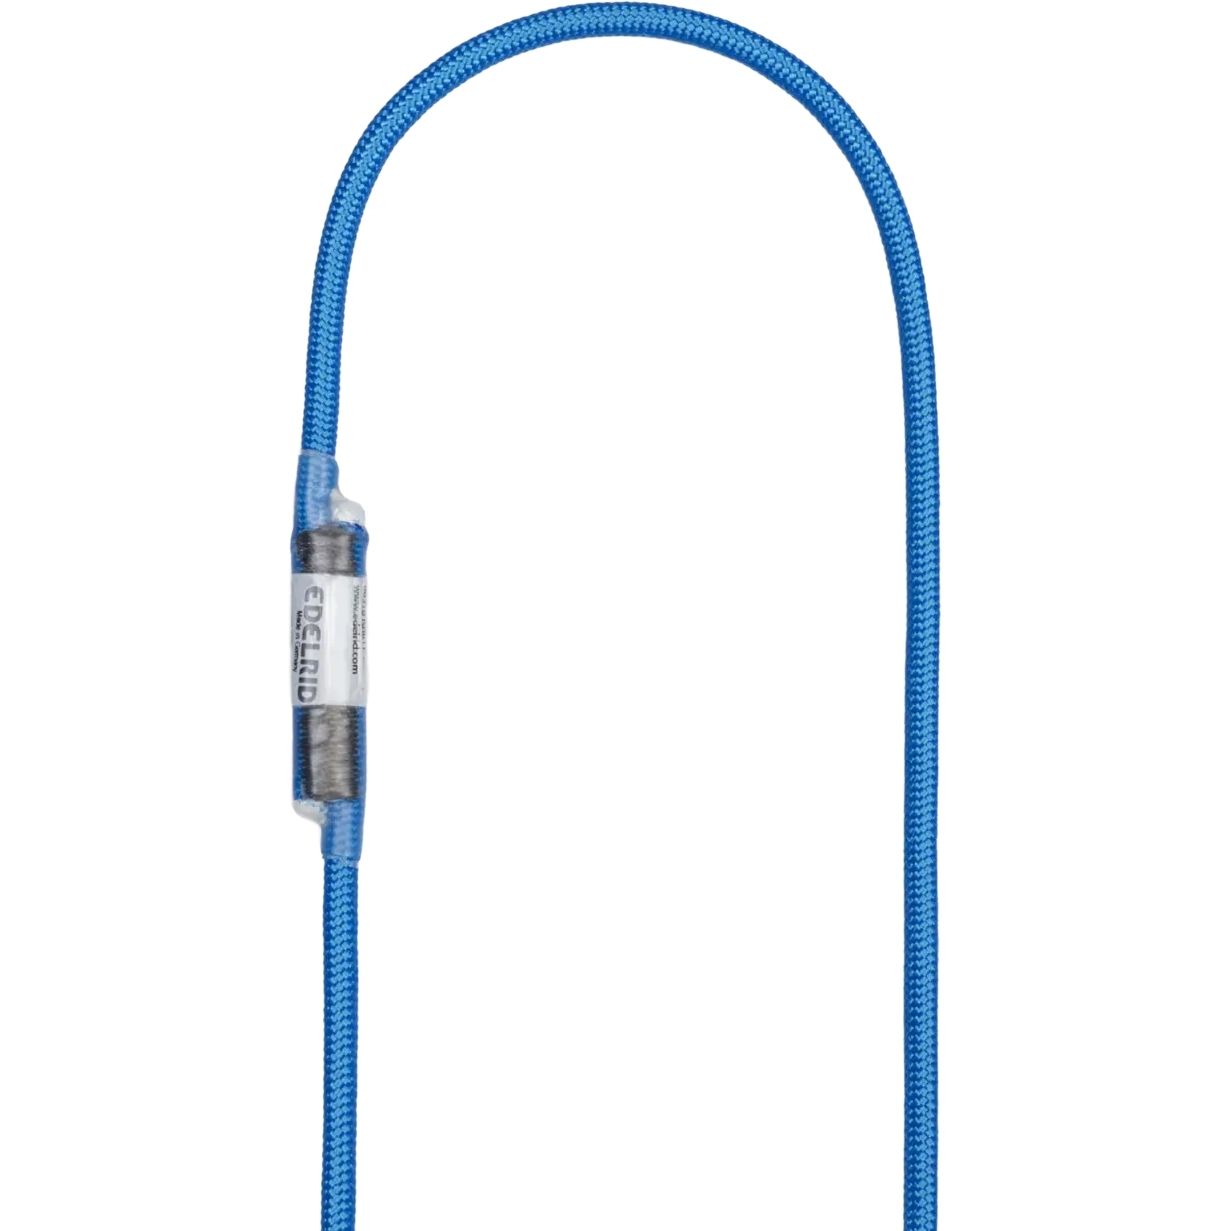 Produktbild von Edelrid HMPE Cord Sling 6 mm Schlinge - 40 cm - blau